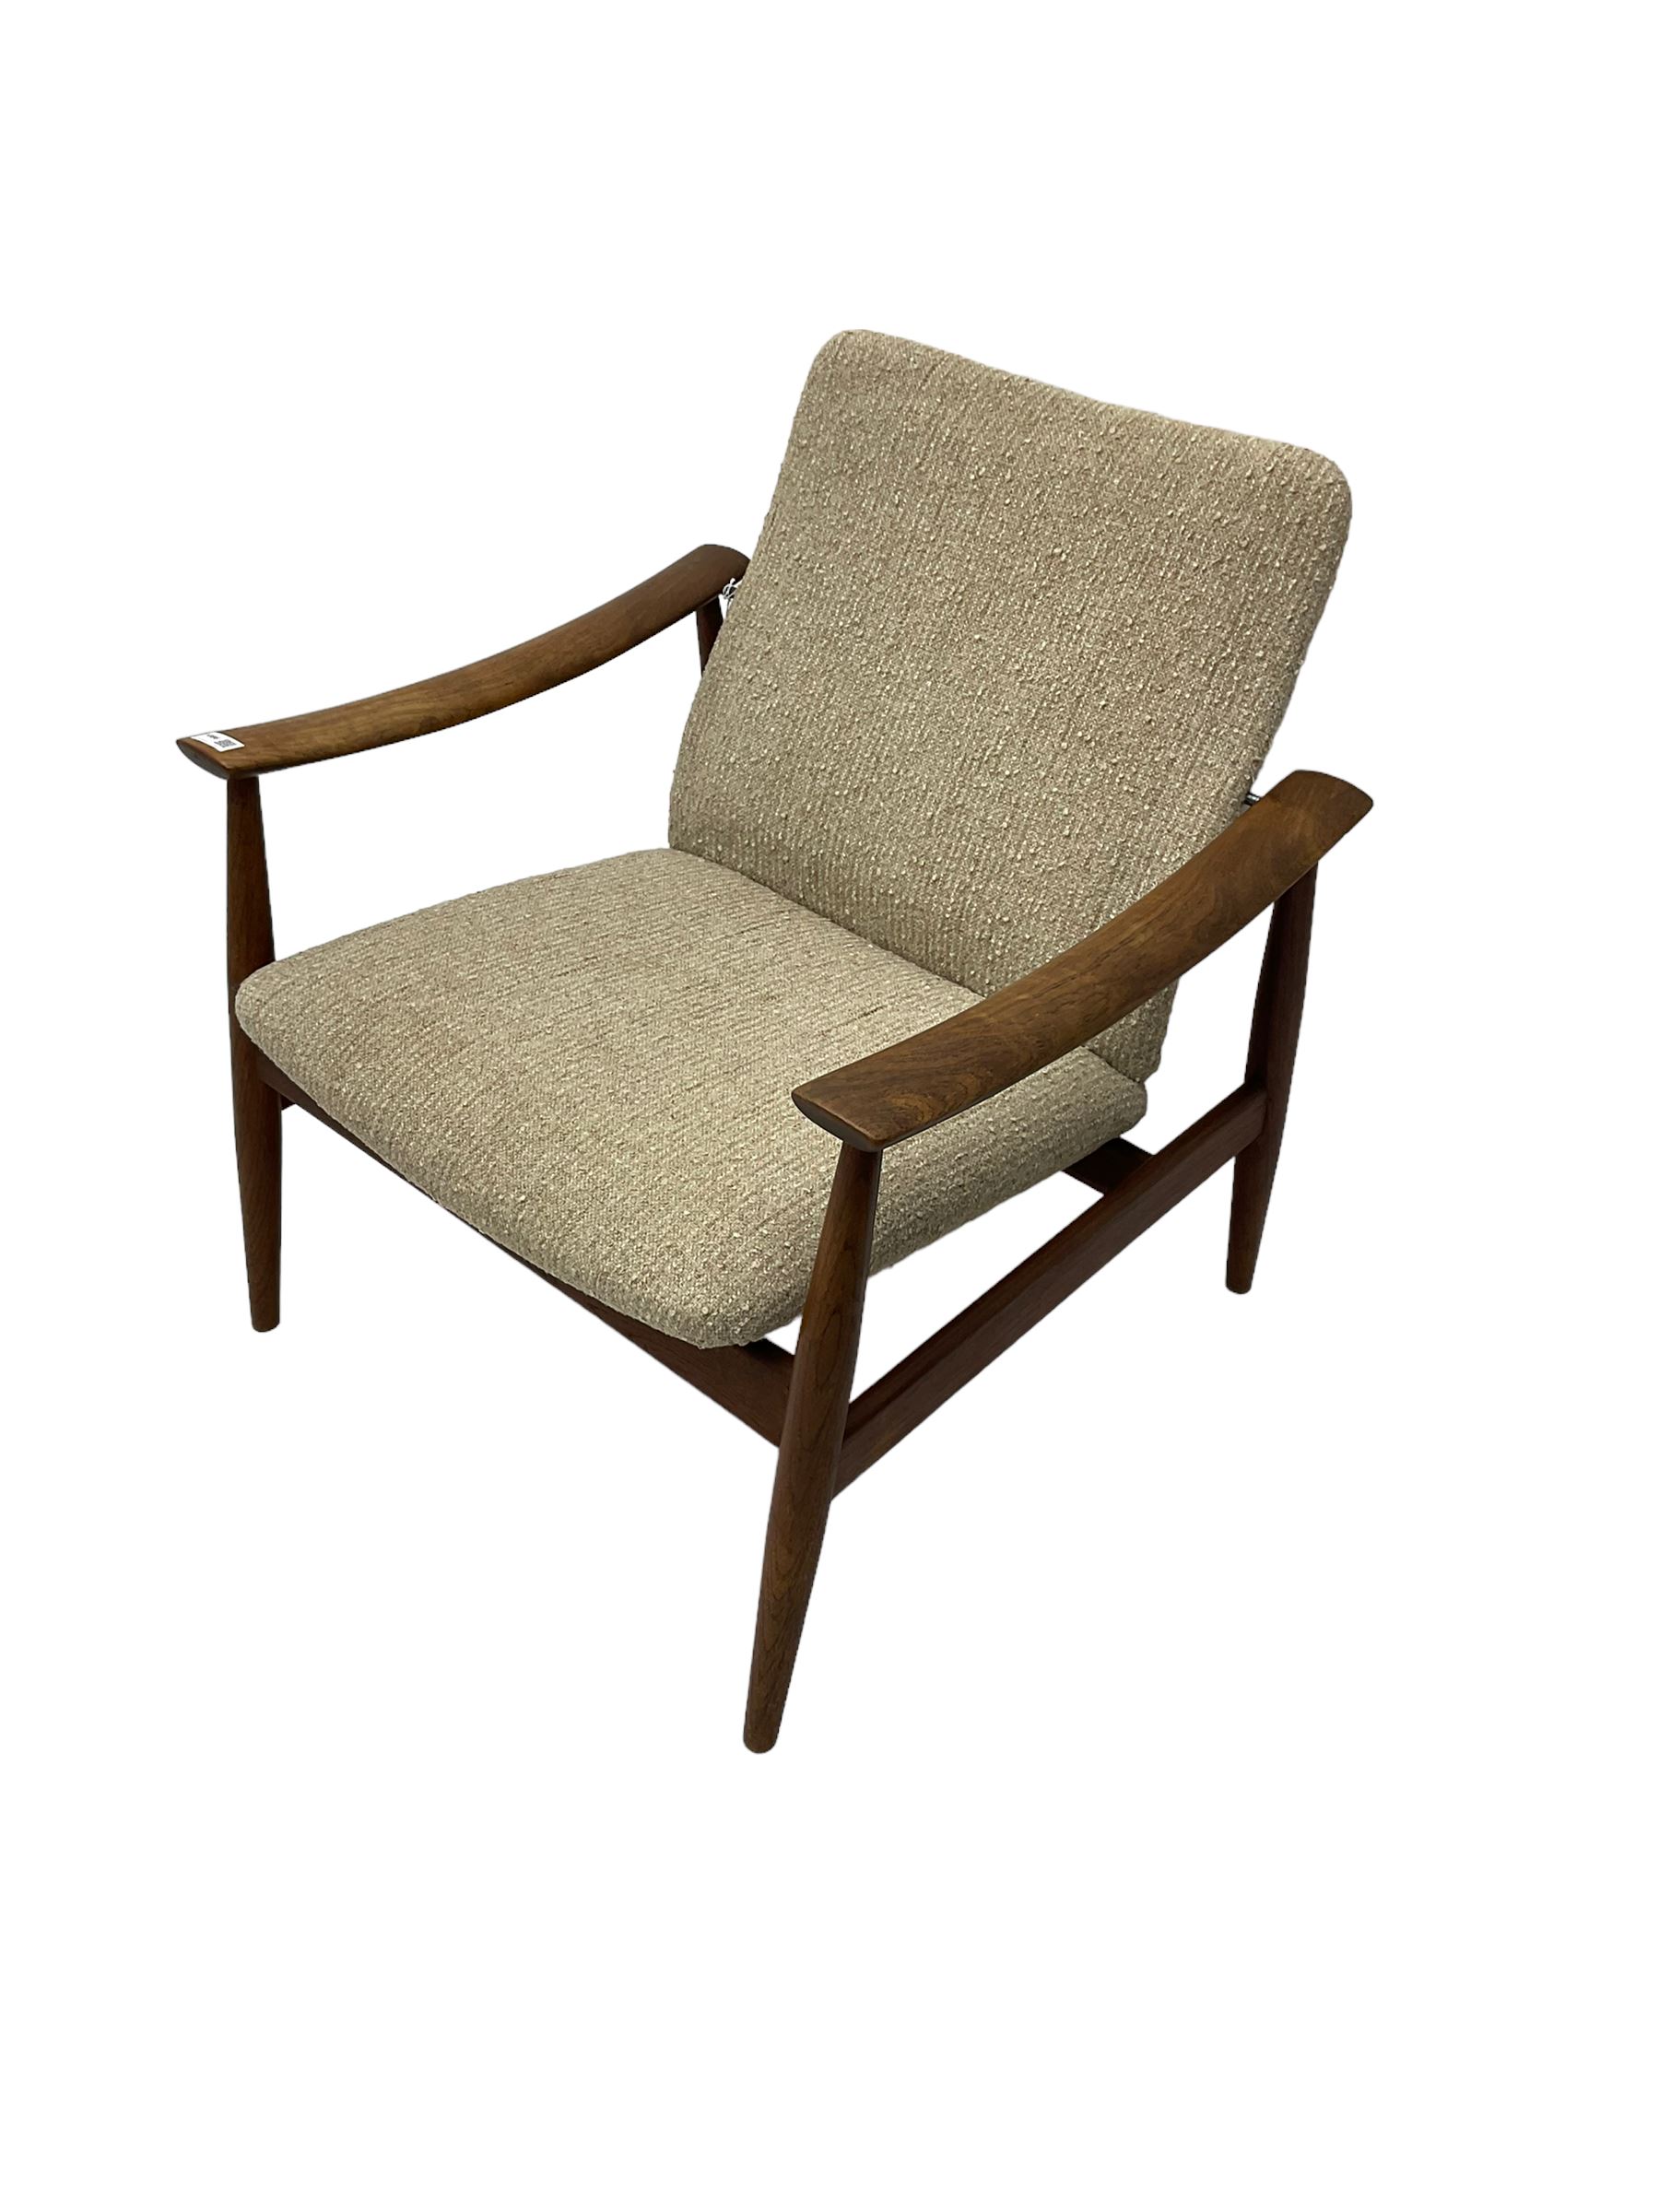 Finn Juhl for France & Son - 'model 138' mid-20th century teak easy chair upholstered in beige fabri - Image 3 of 14